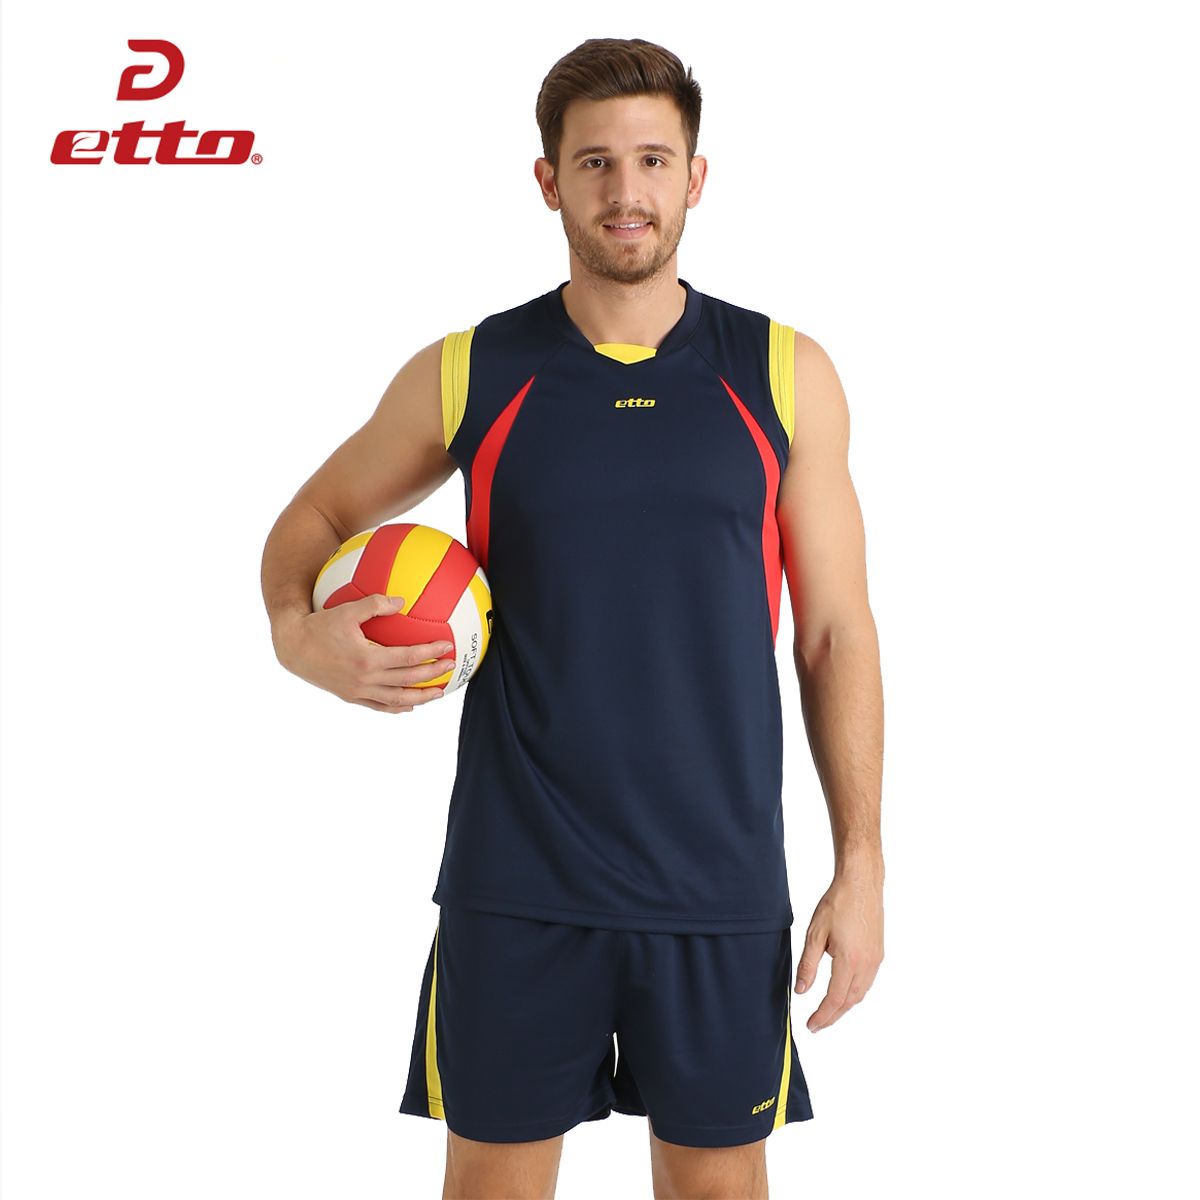 Etto Profesionales Voleibol Traje Uniformes Shorts Jersey Voleibol Set De Deportes Masculino Kit De Formación HXB016 De 22,59 |